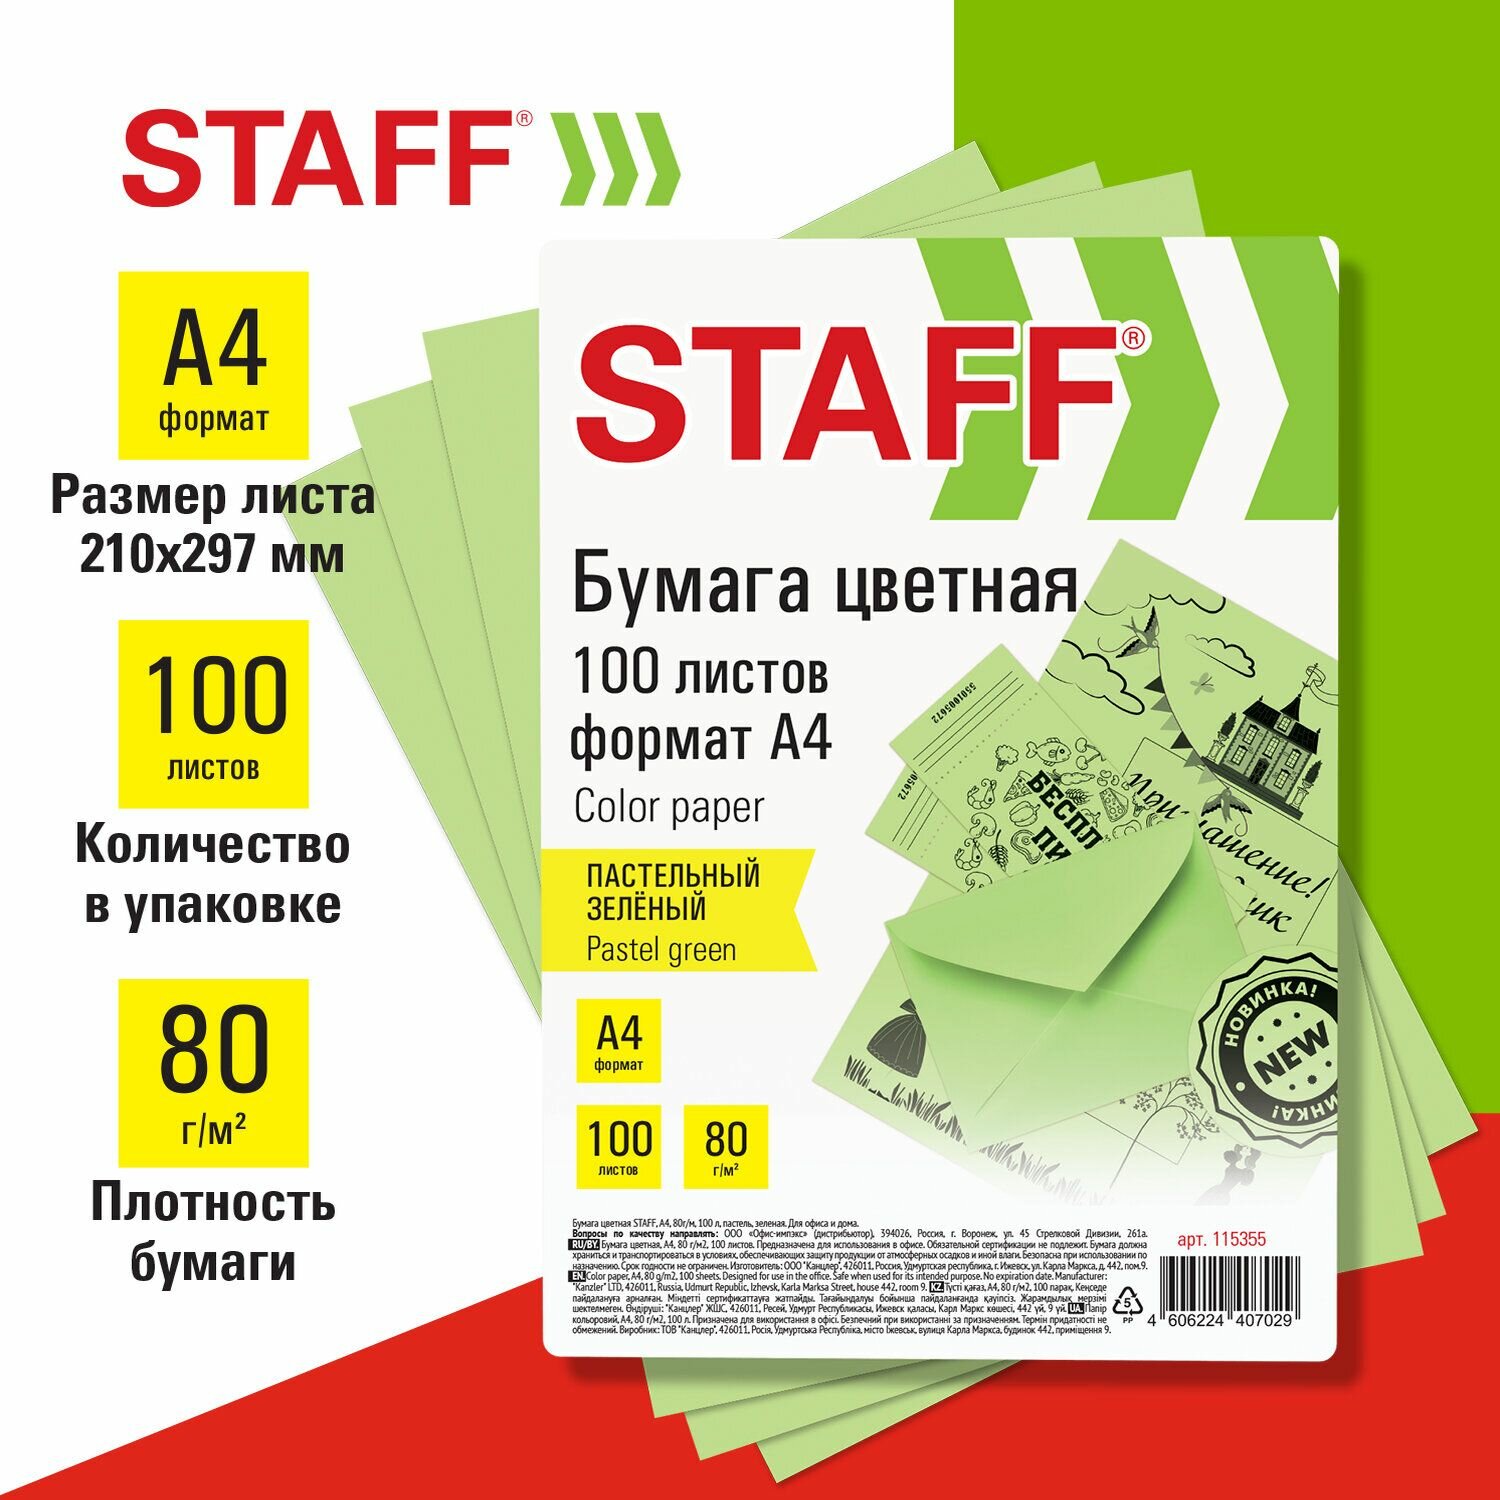 Цветная бумага Staff "Пастель", зеленая, А4, 80 г/м2, 100 листов, для офиса и дома